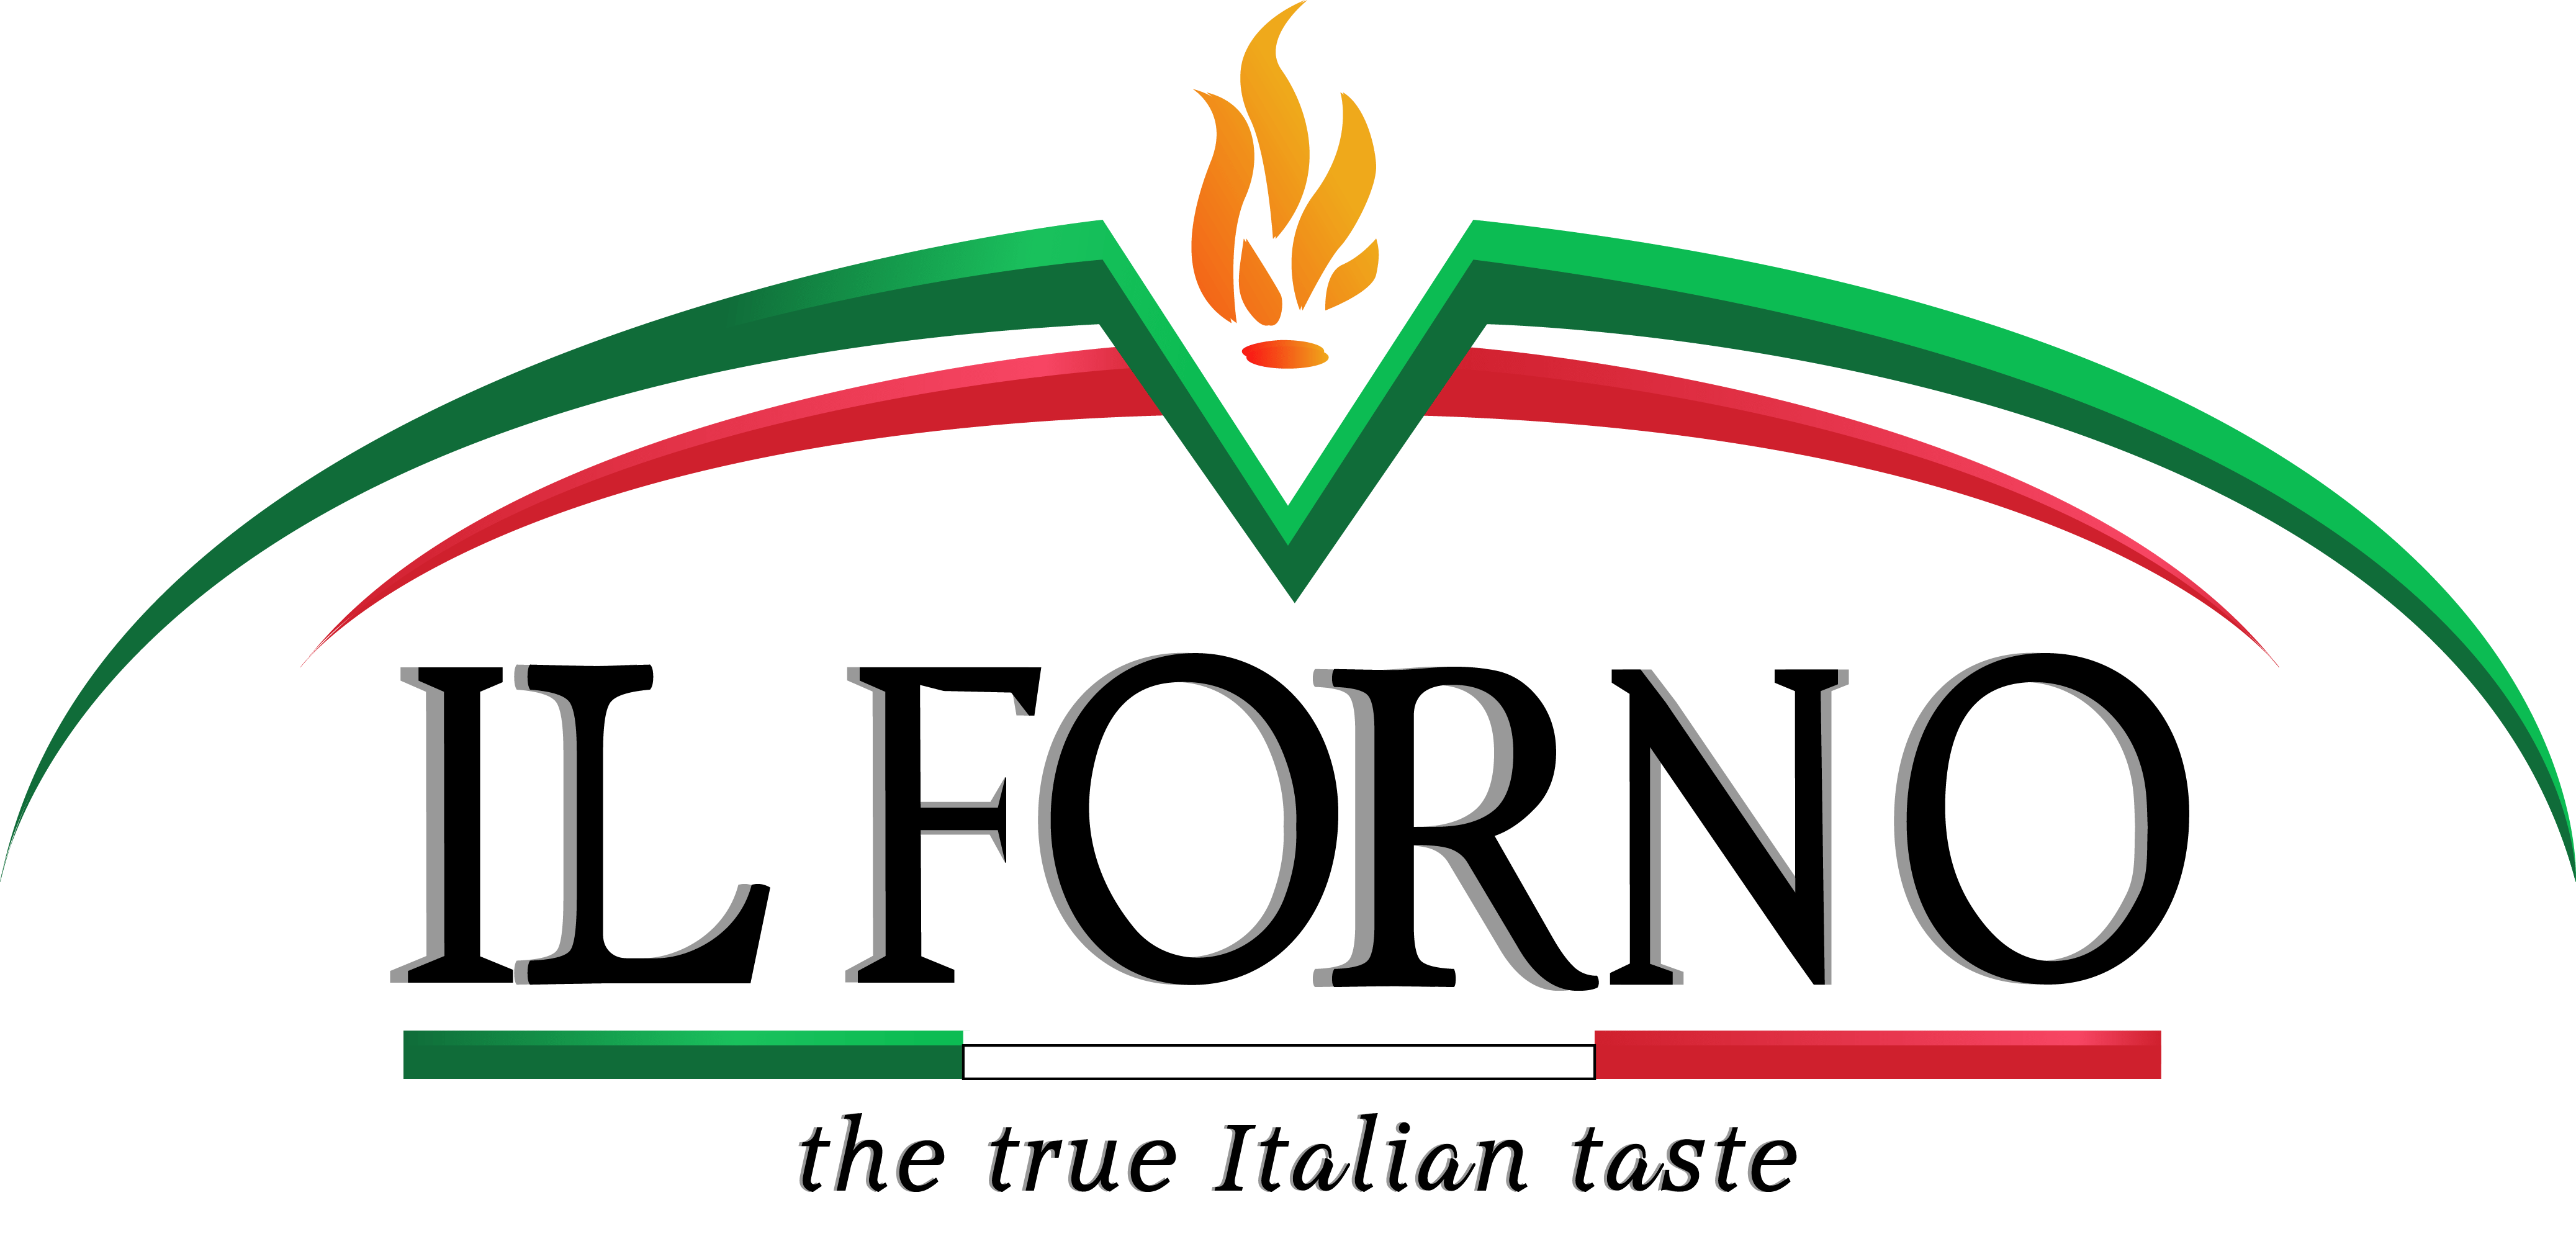 Ilforno - logo